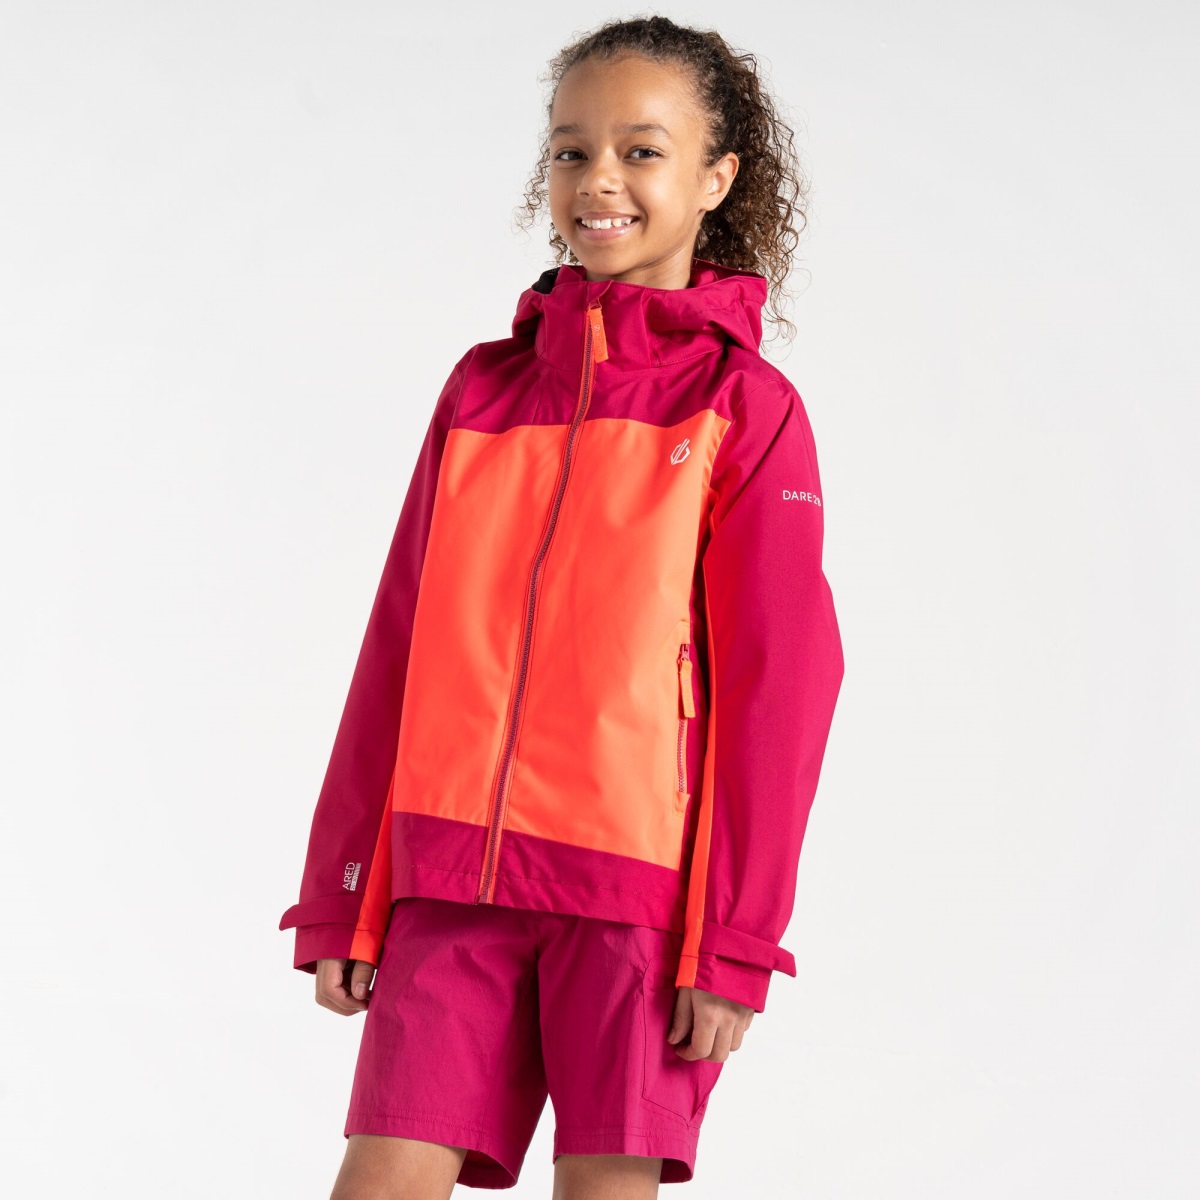 Dětská outdoorová bunda Dare2b EXPLORE oranžová/růžová 134-140